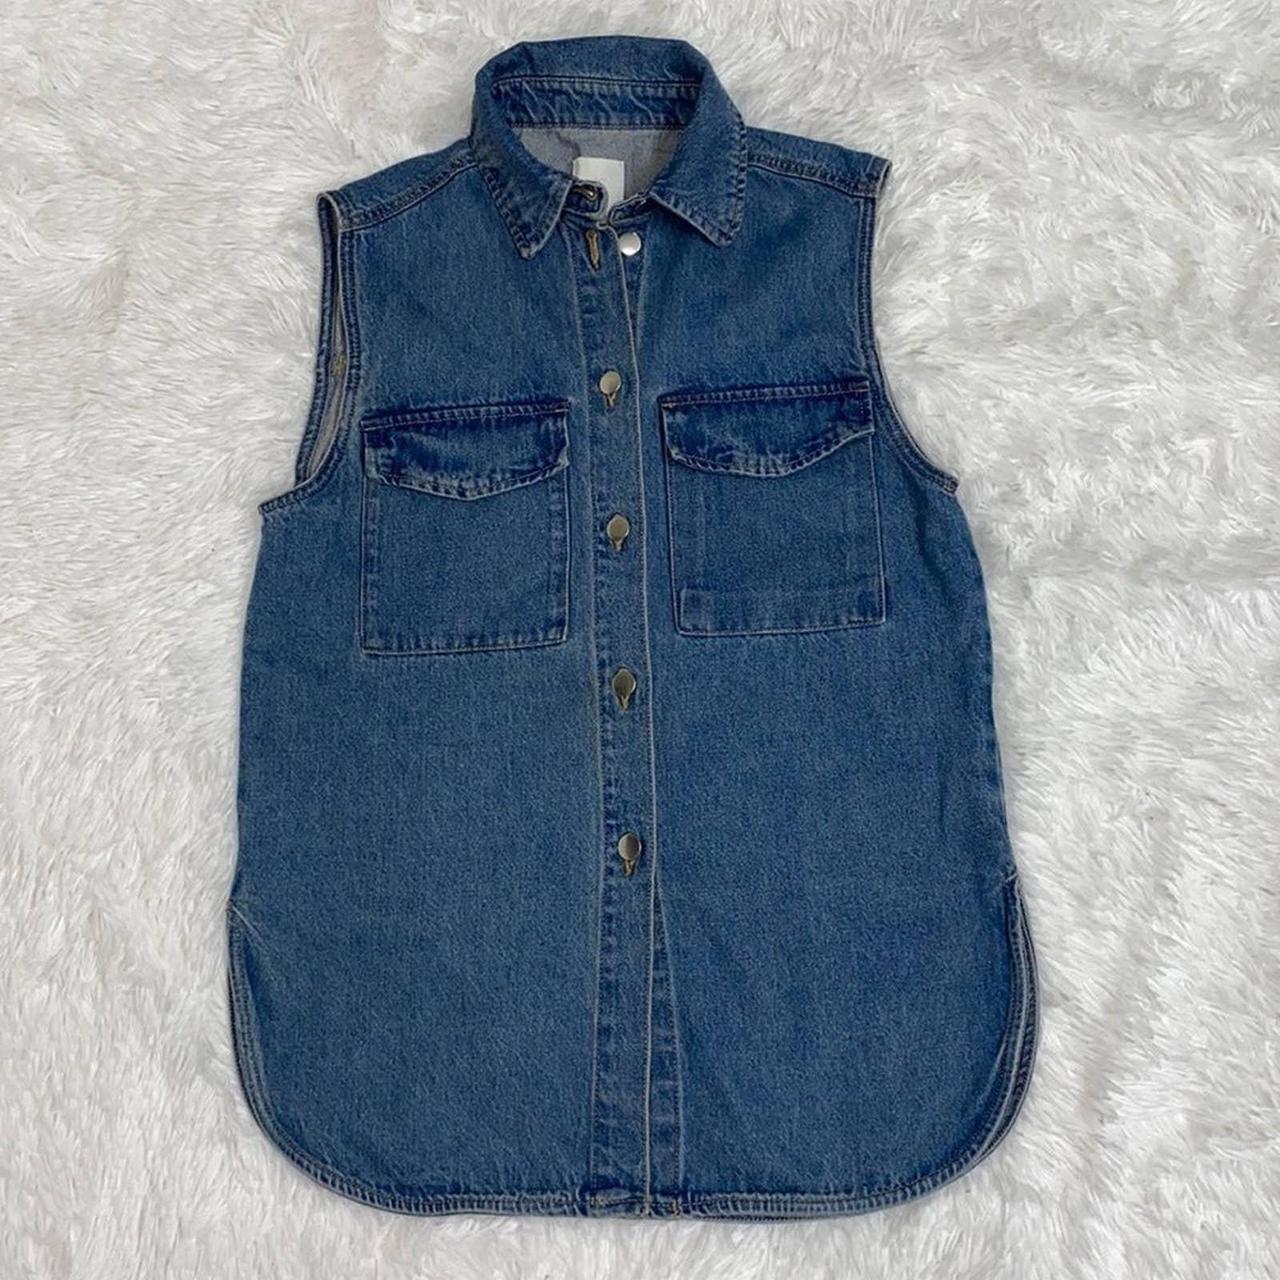 Product Image 3 - H&M Sleeveless Shirt Jacket.Washed cotton